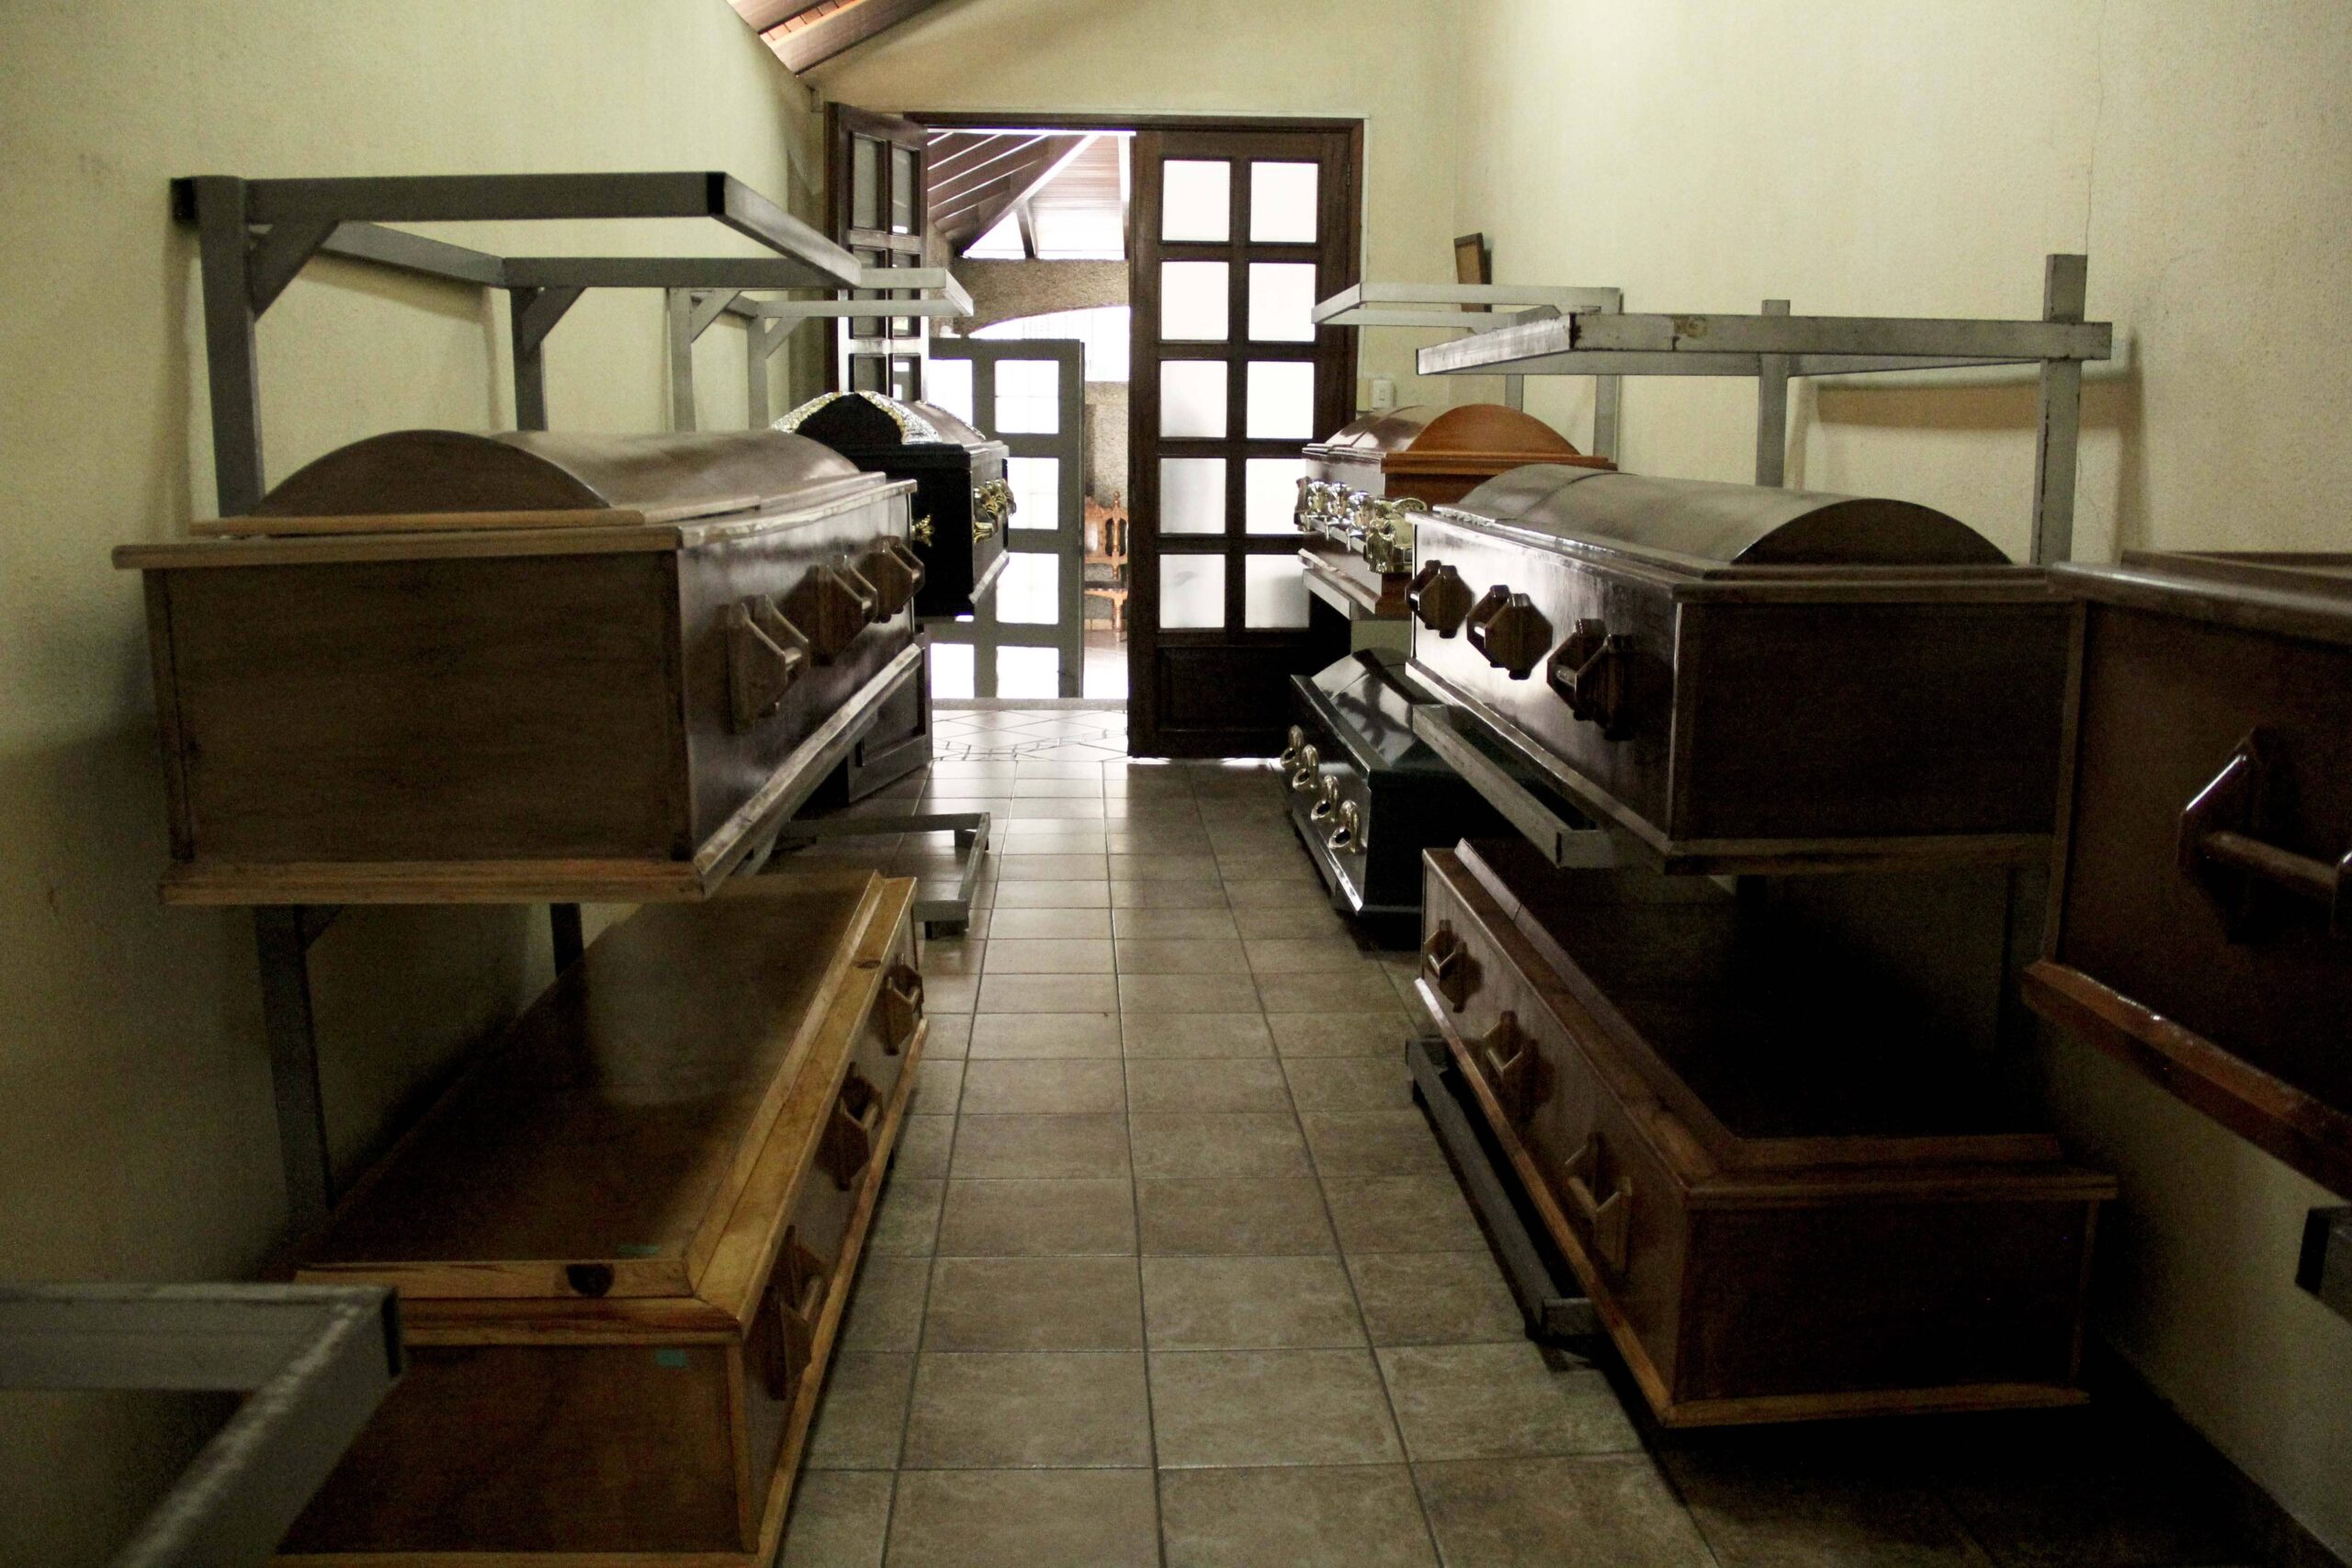 Los costos de la funerarias "matan" a cualquiera en Caracas